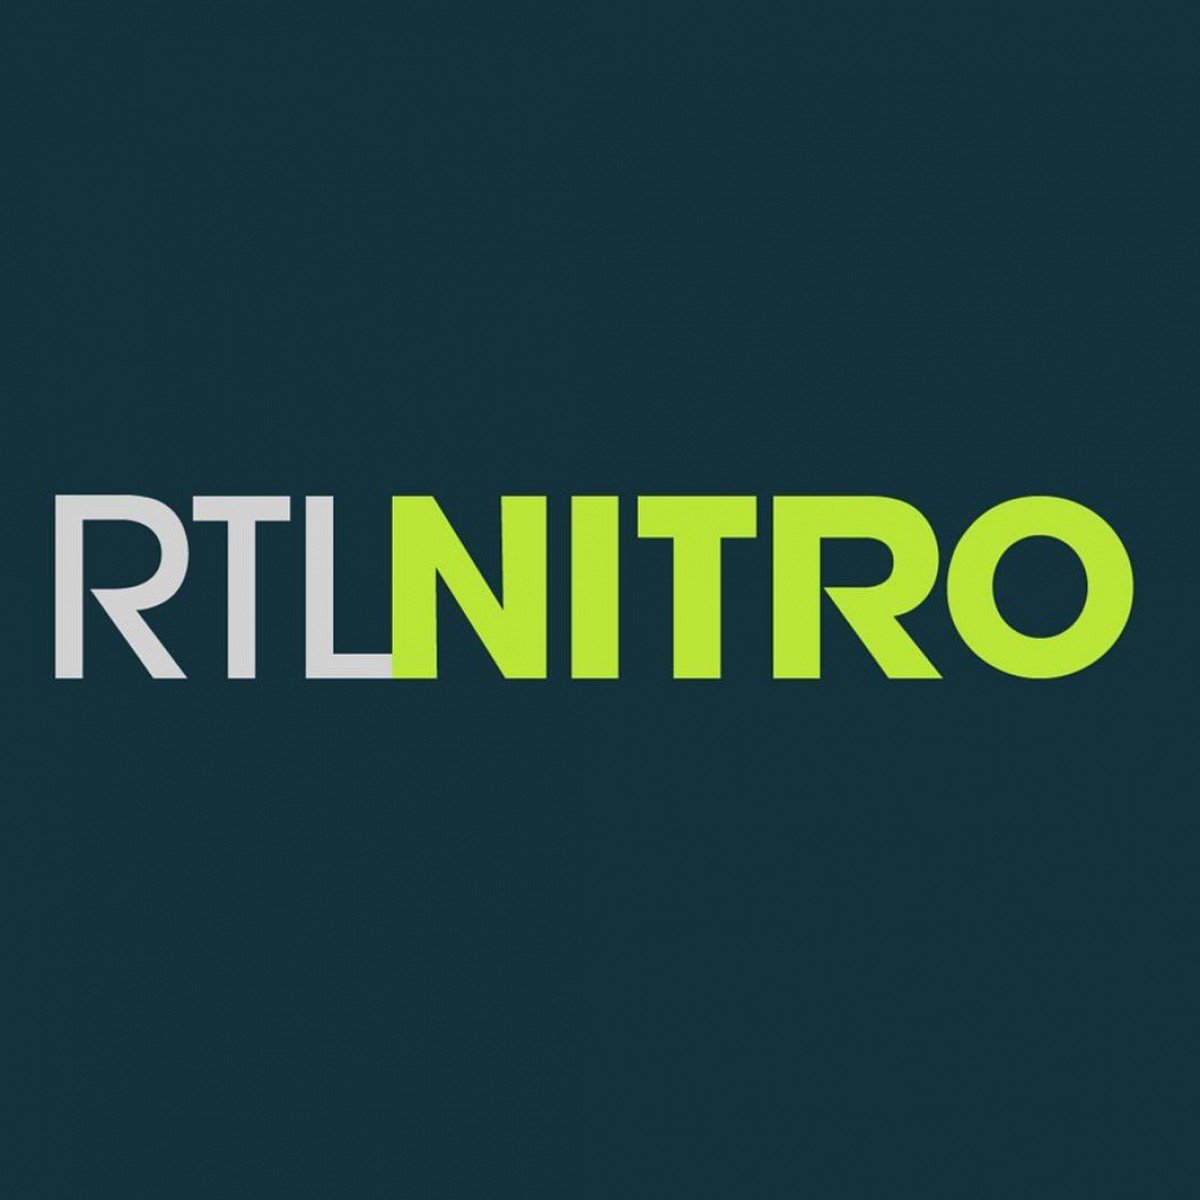 Profile RTL Nitro Tv Channels